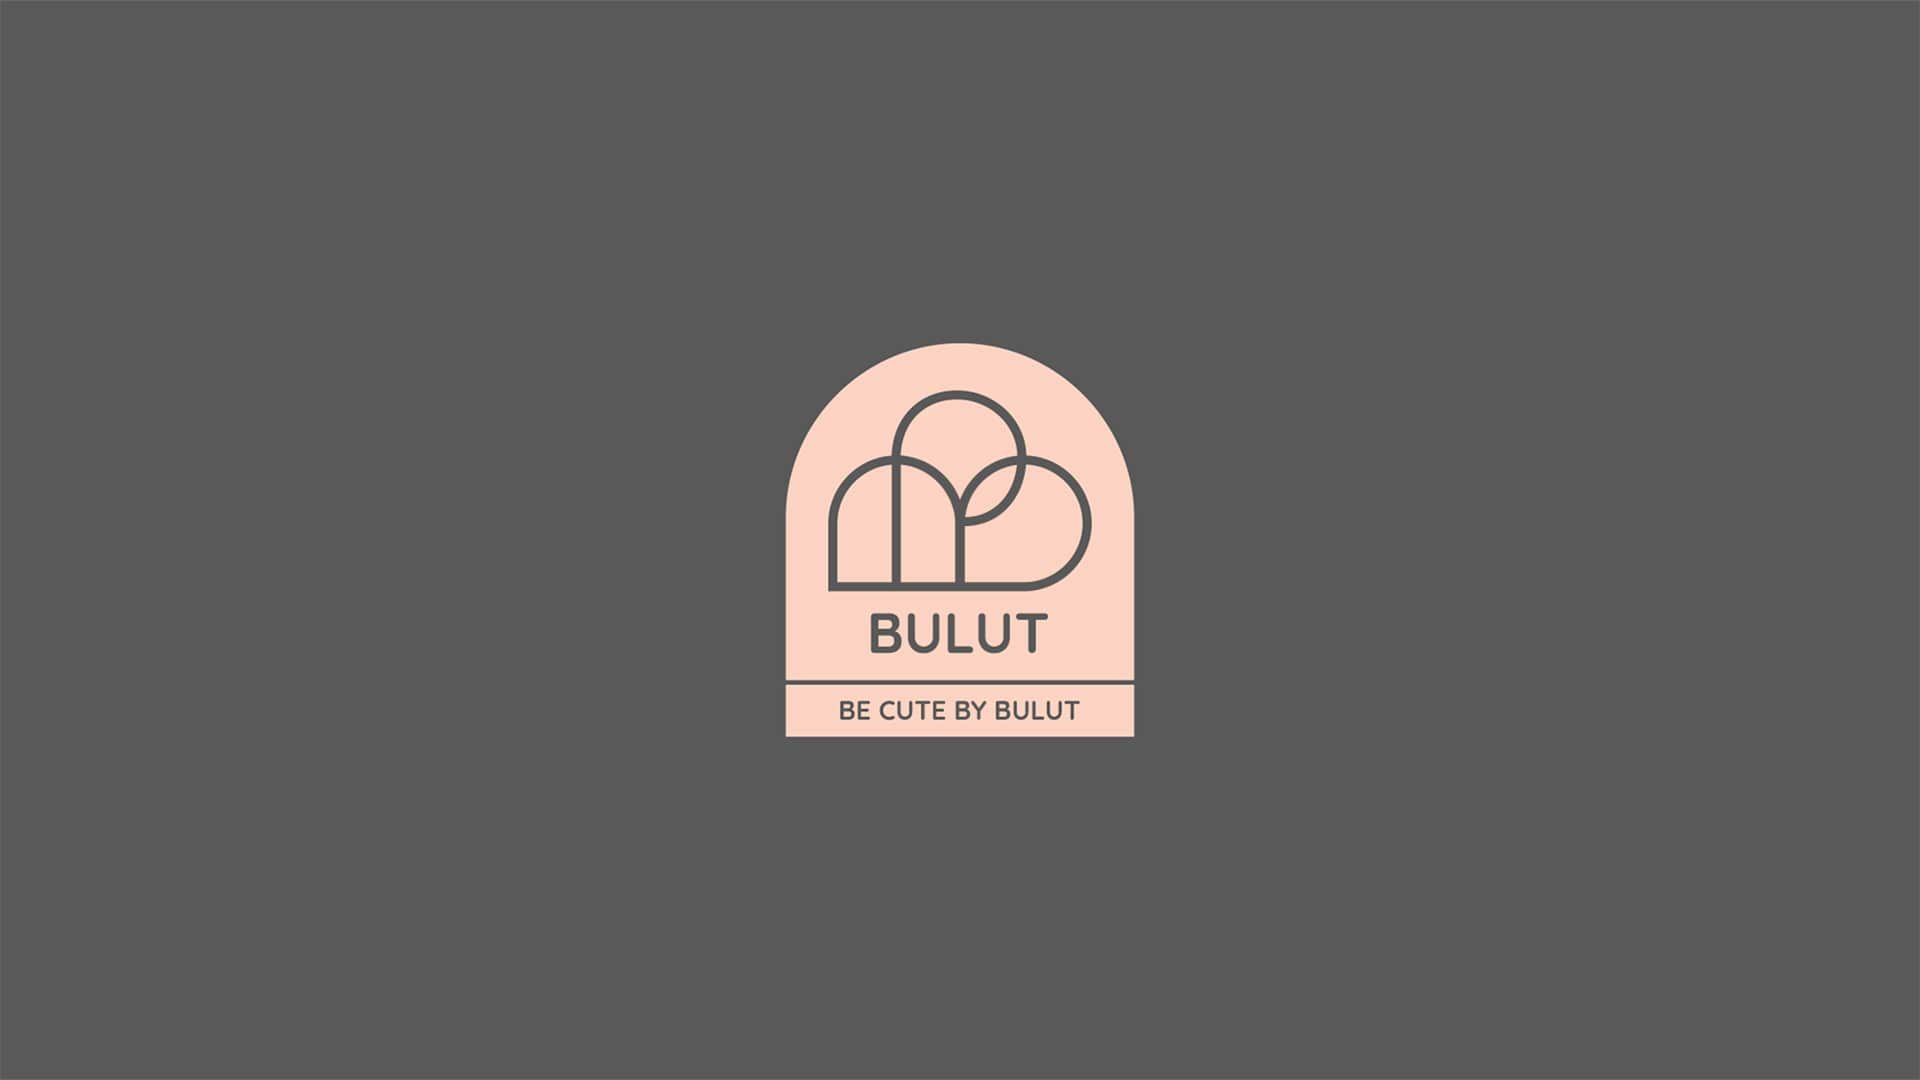 bulut branding project zen branding agency آژانس برندسازی ذن طراحی هویت بصری بولوت (6)-min